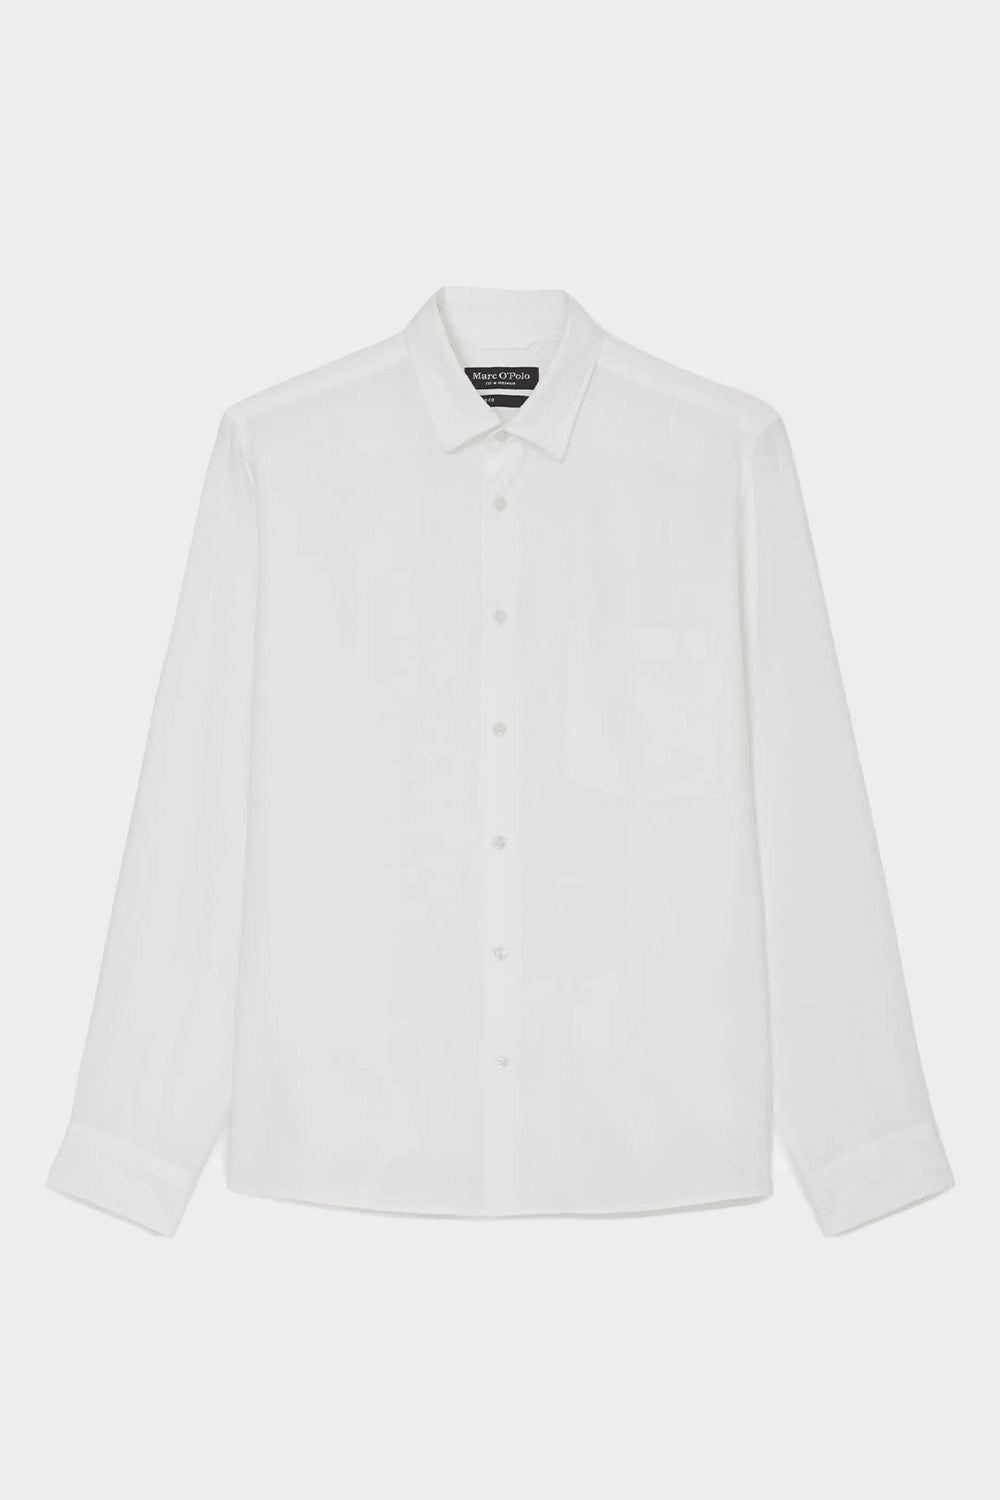 חולצה לגברים בצבע לבן MARC O POLO MARC O'POLO Vendome online | ונדום .